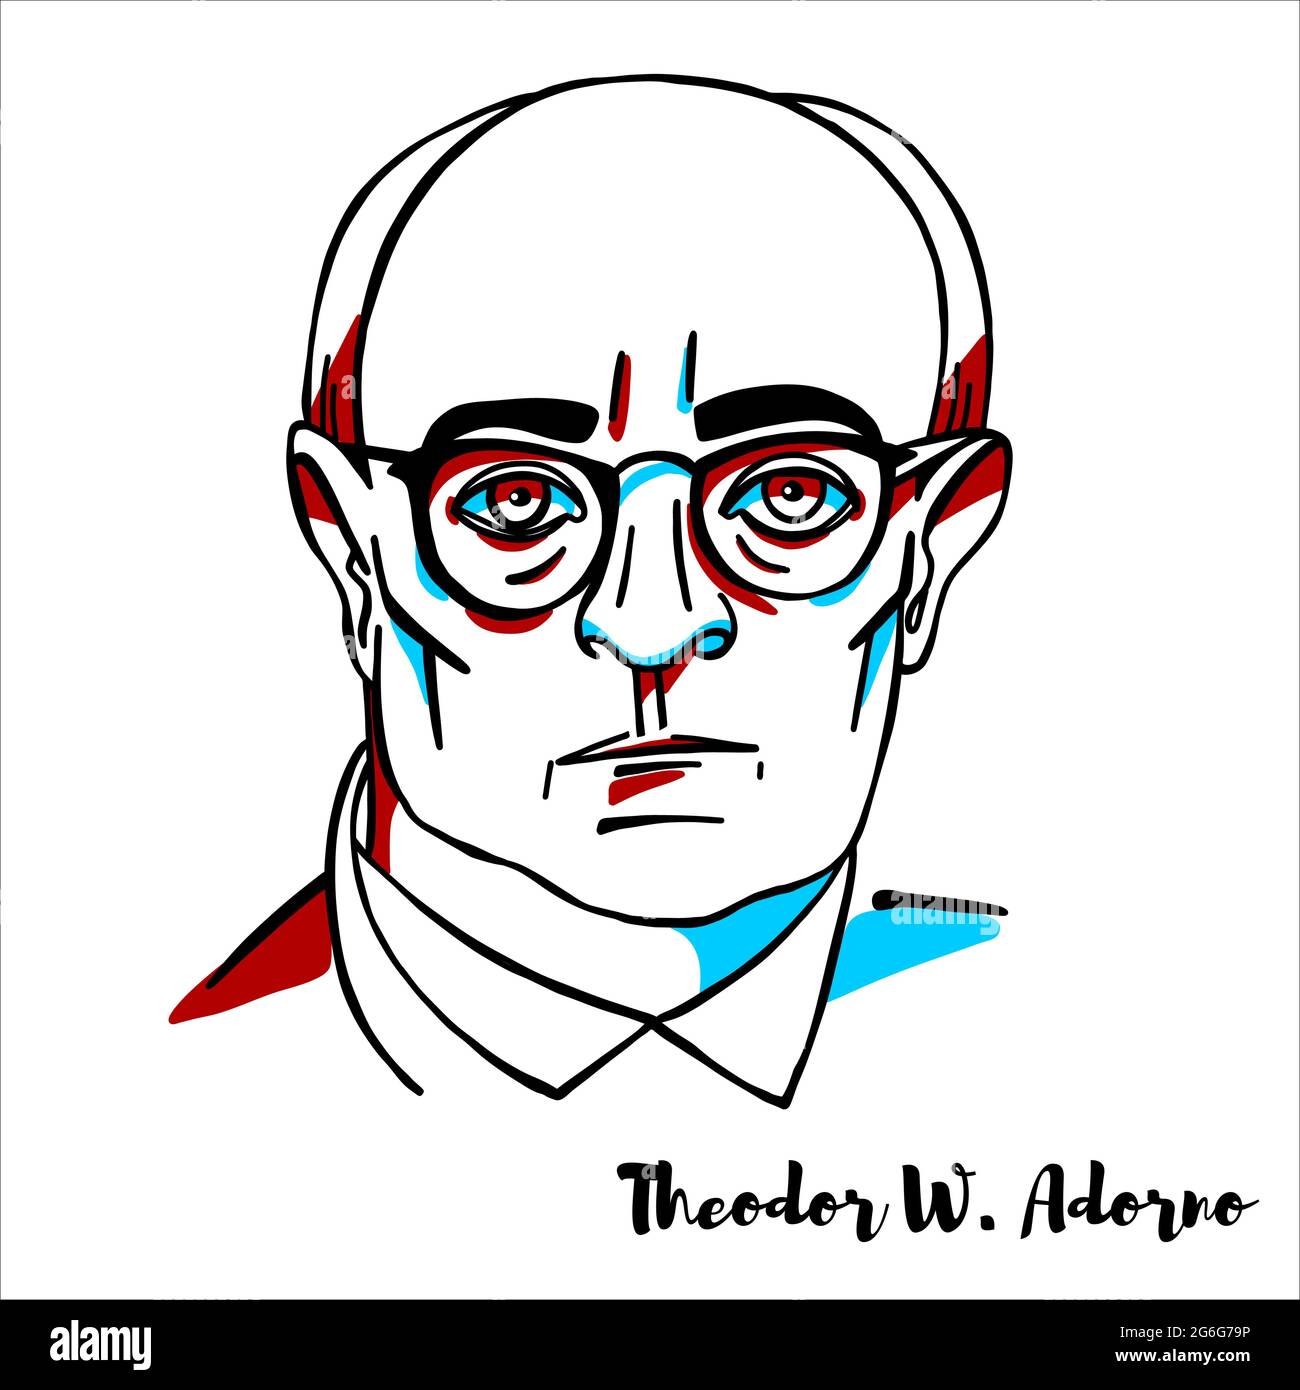 RUSSIA, MOSCA - 04 aprile 2019: Theodor W. Adorno ritratto vettoriale inciso con contorni a inchiostro. Filosofo tedesco, sociologo, psicologo e comp Illustrazione Vettoriale